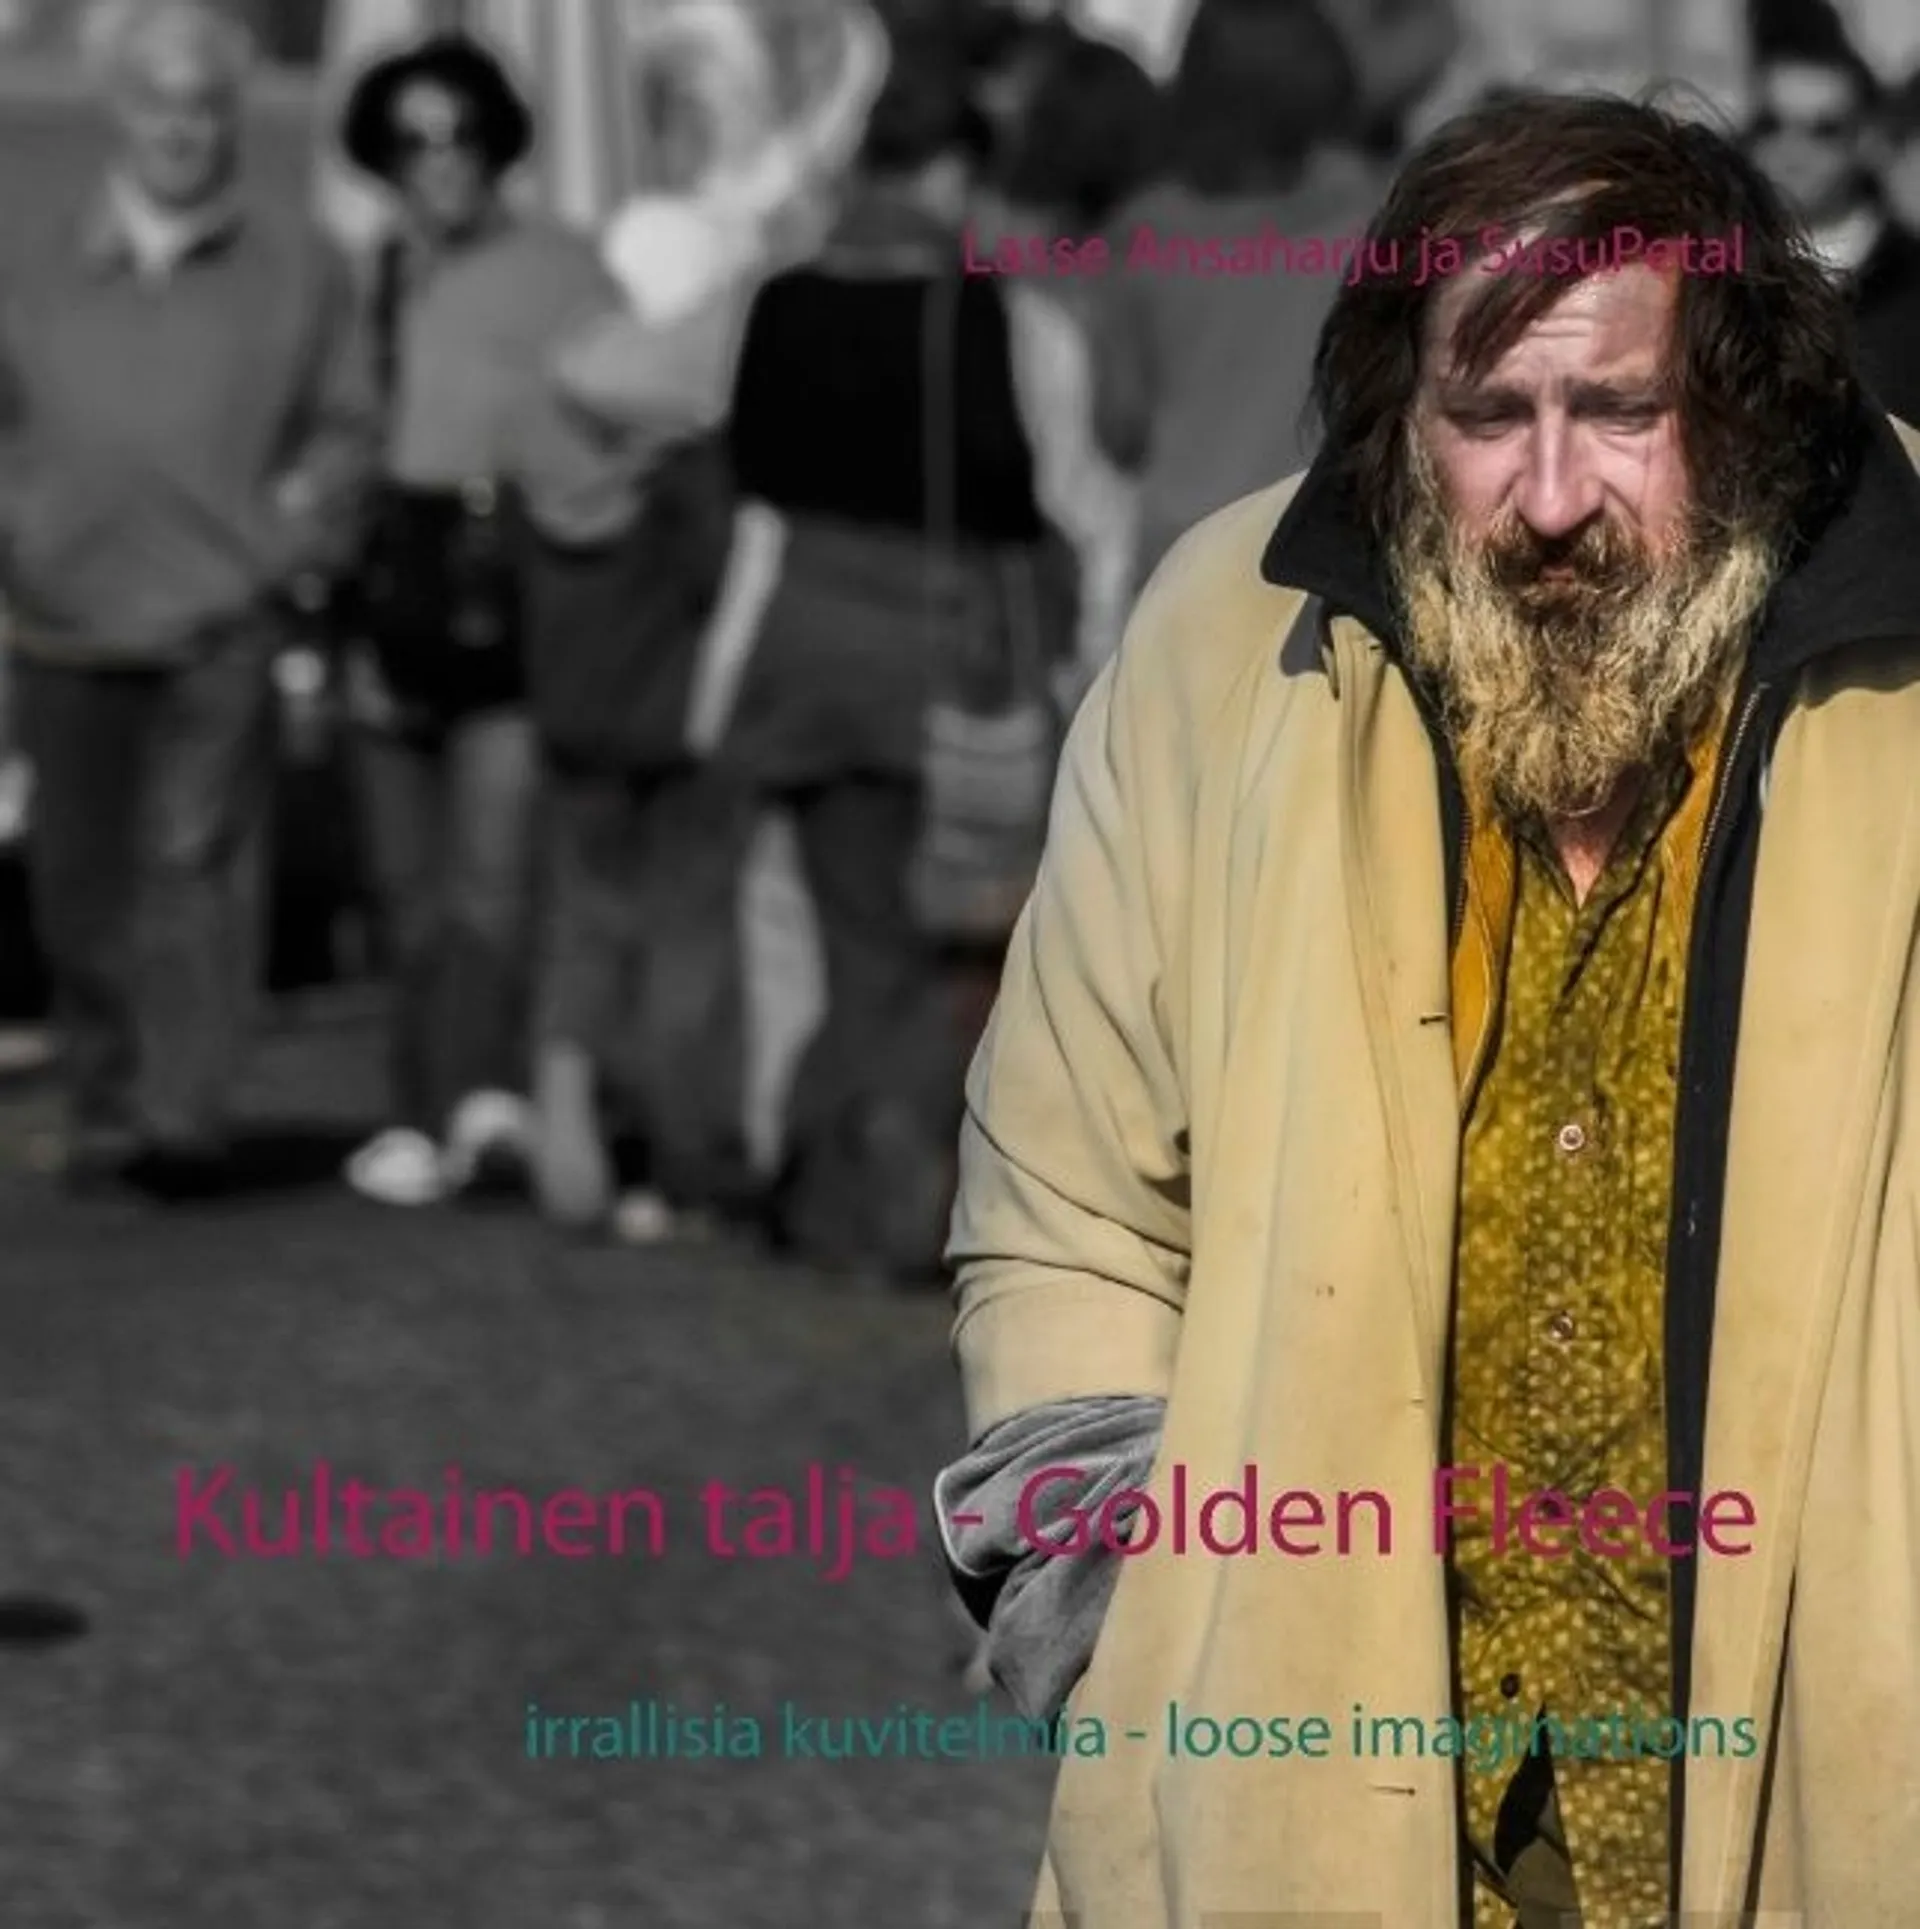 Petal, Kultainen talja - Golden Fleece